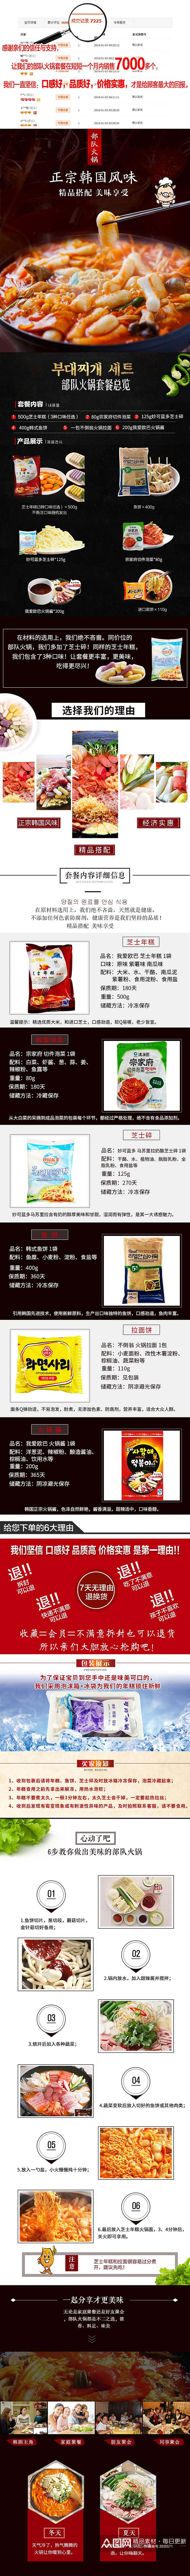 正宗韩国风味食品零食电商详情页素材